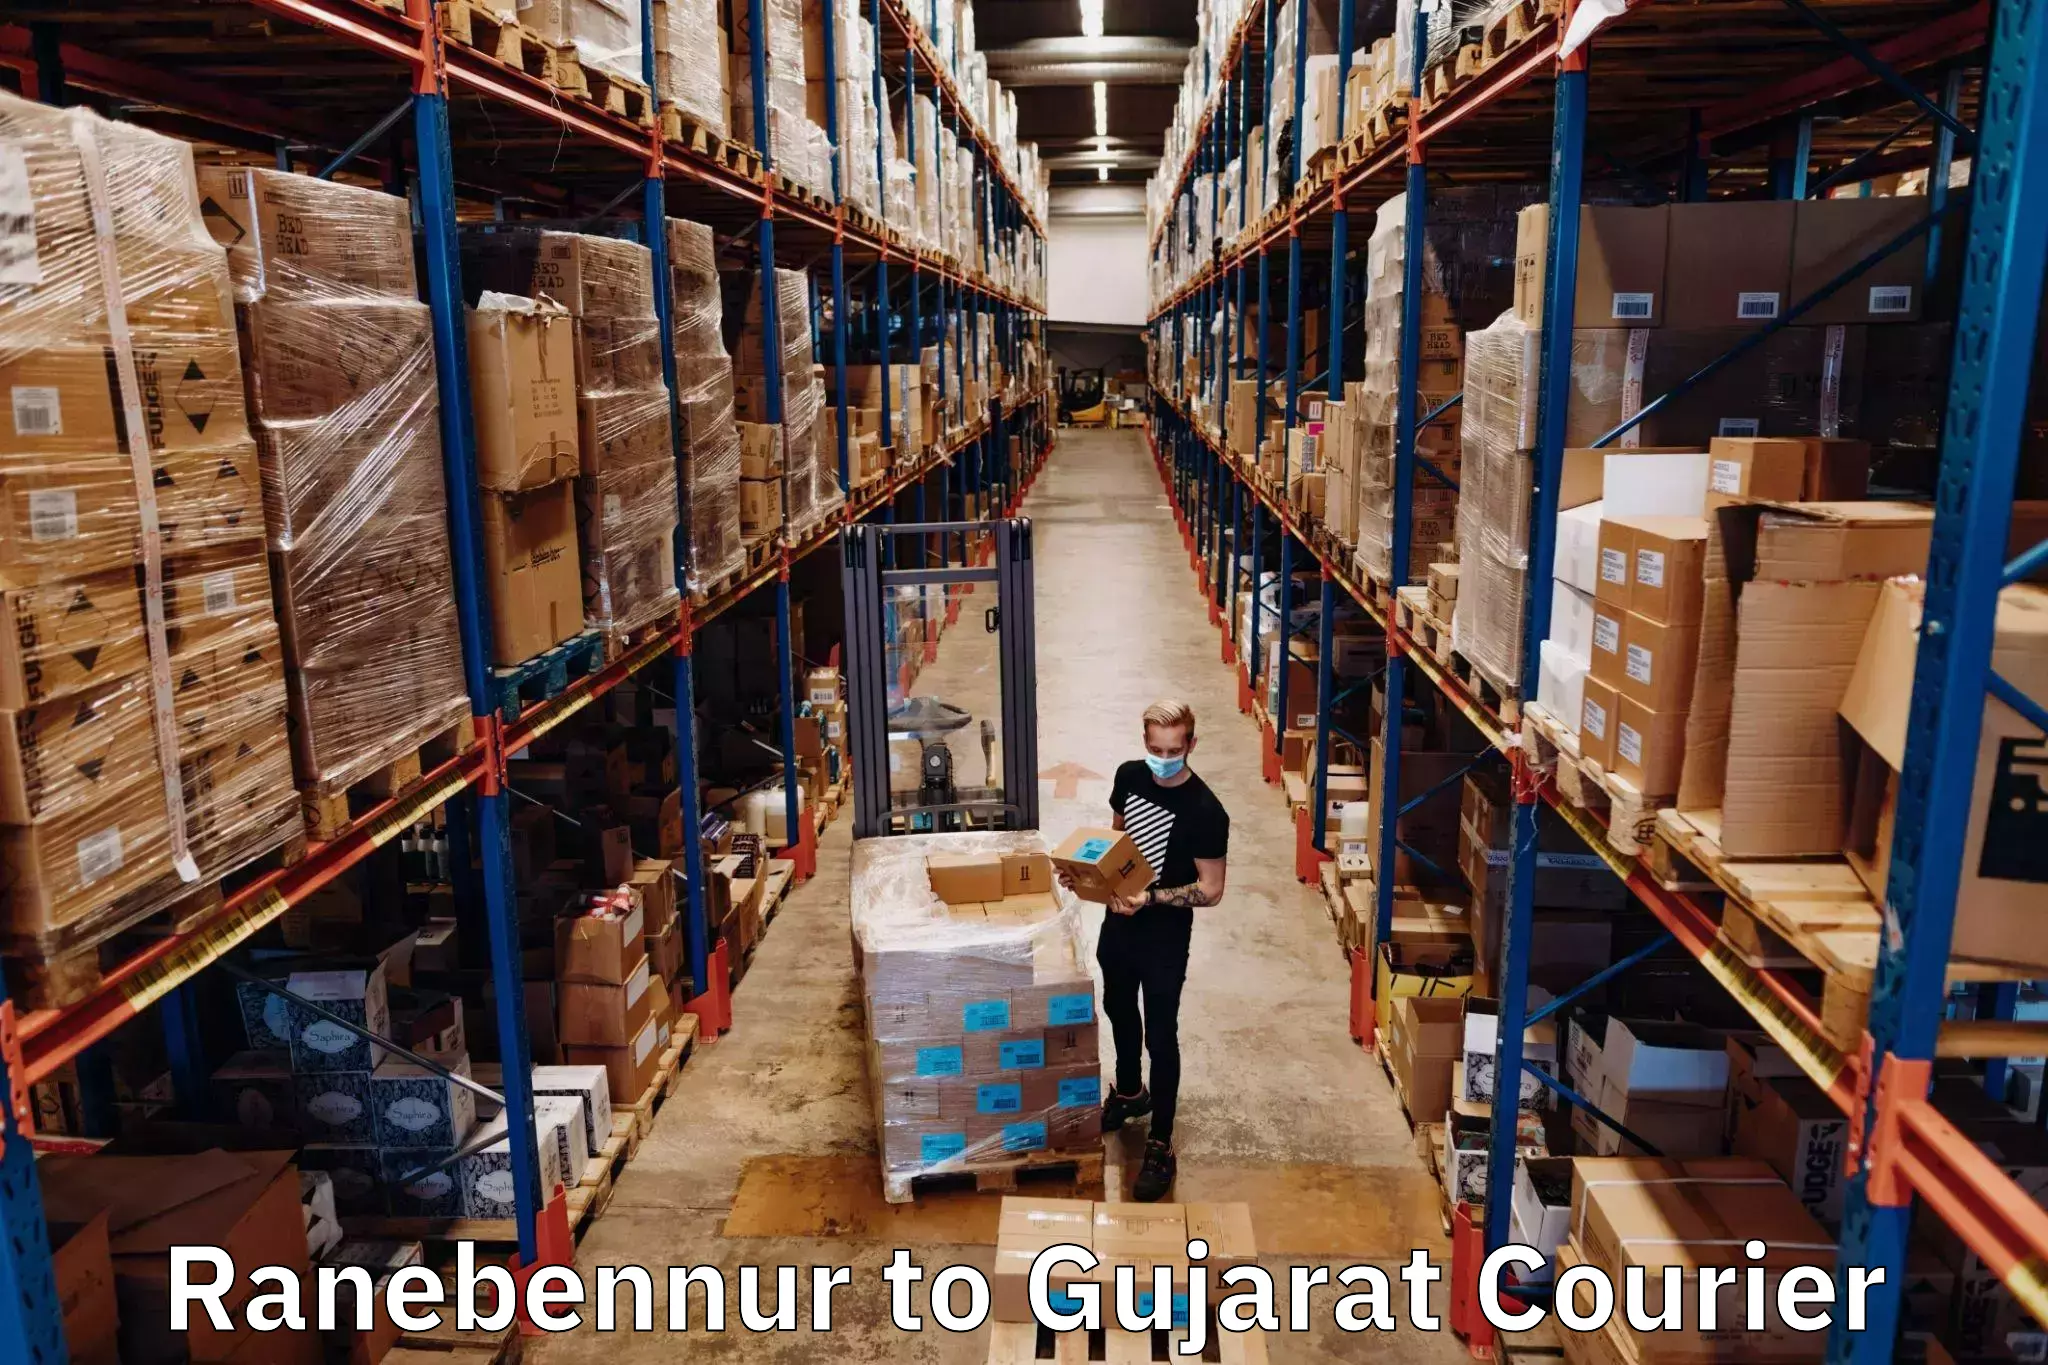 International courier networks Ranebennur to Gujarat